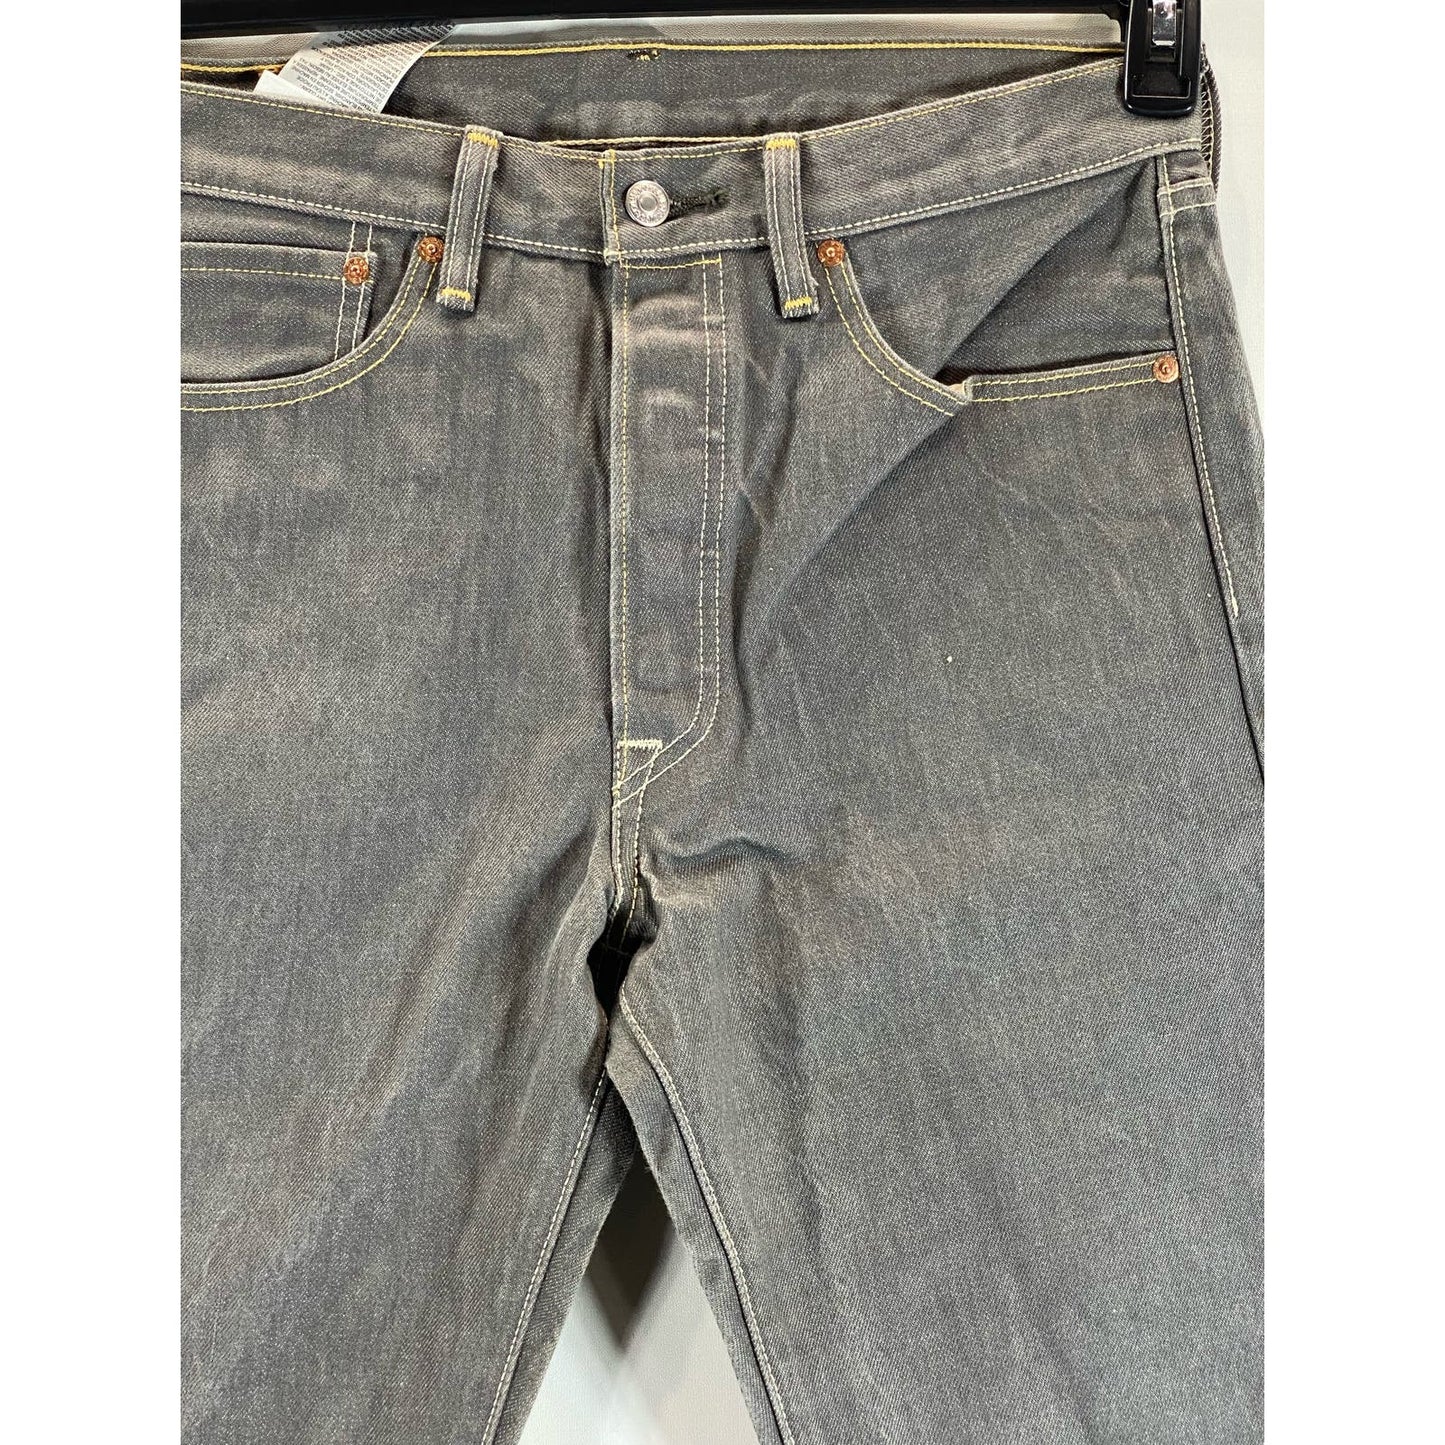 LEVI'S Men's Washed Black 501 Original fit Straight Leg Denim Jeans SZ 32X32